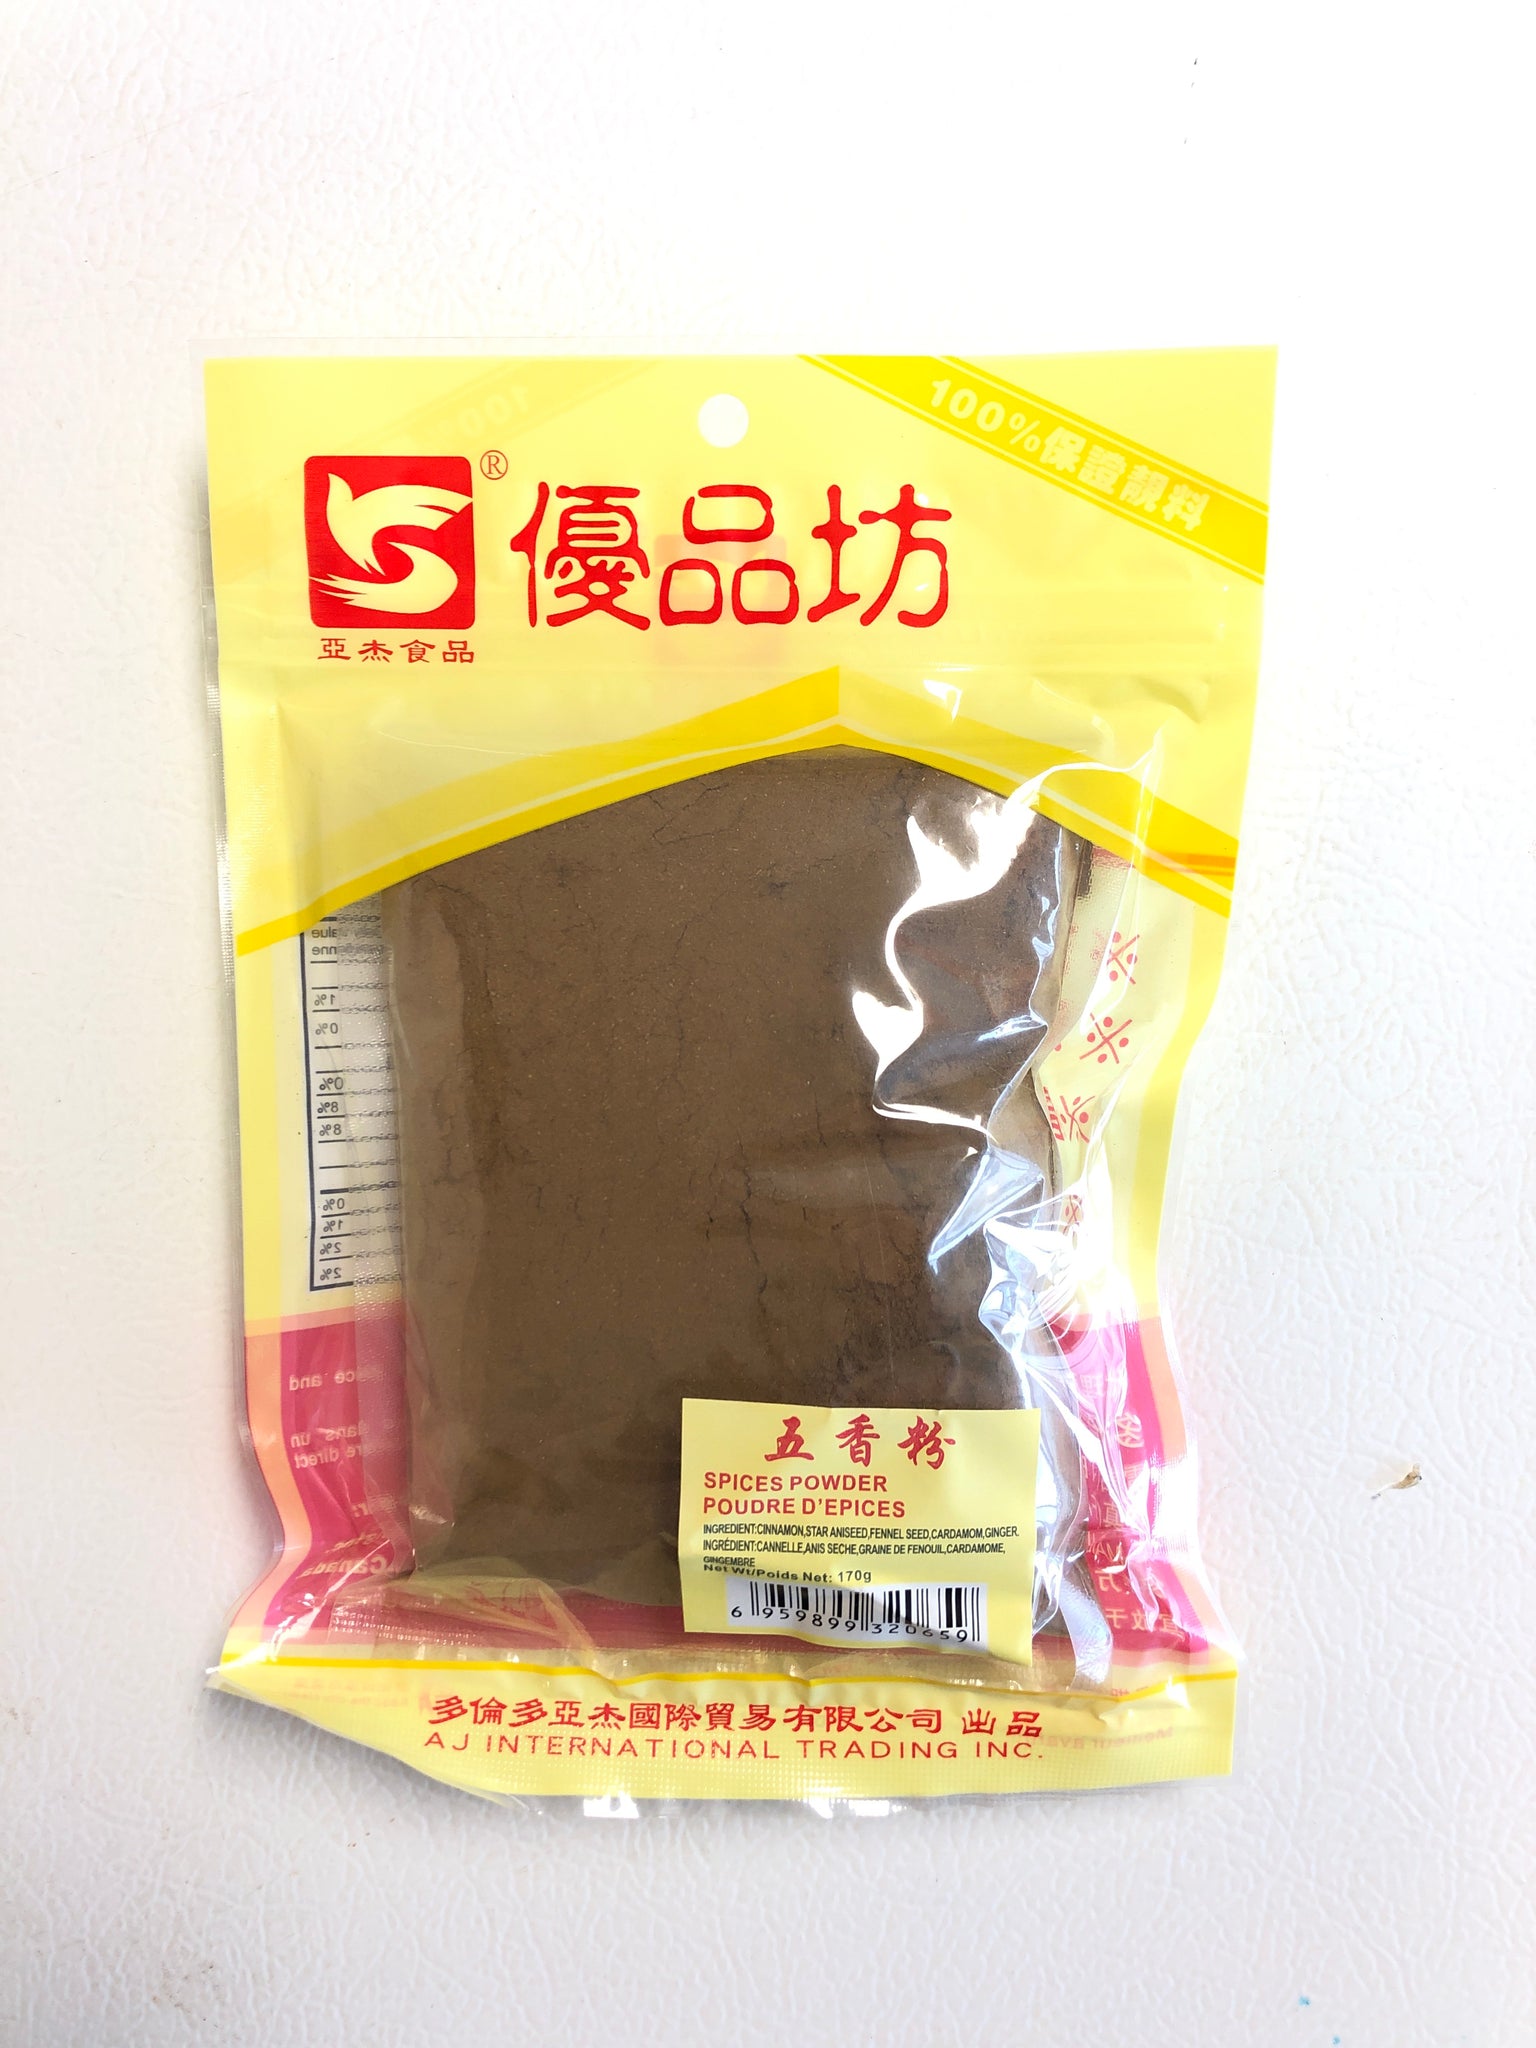 优品坊五香粉 170g spice powder